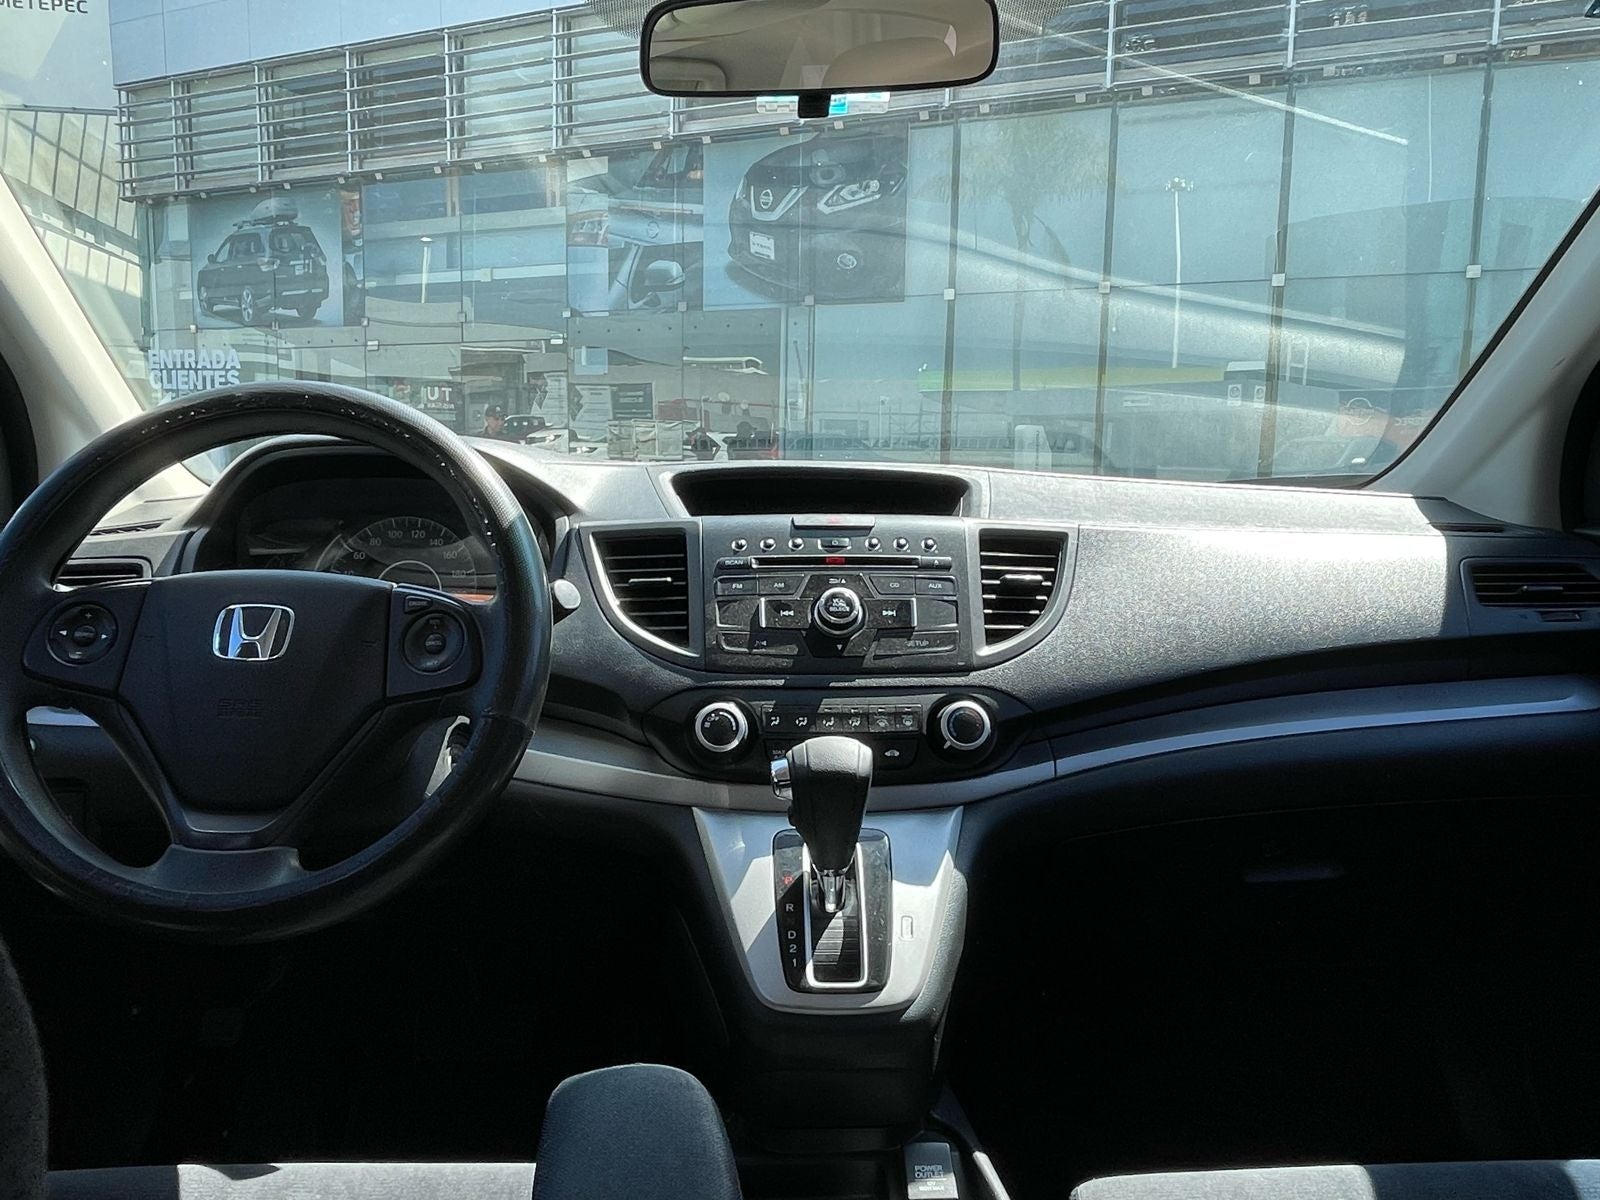 2014 Honda CR-V 2.4 EX At